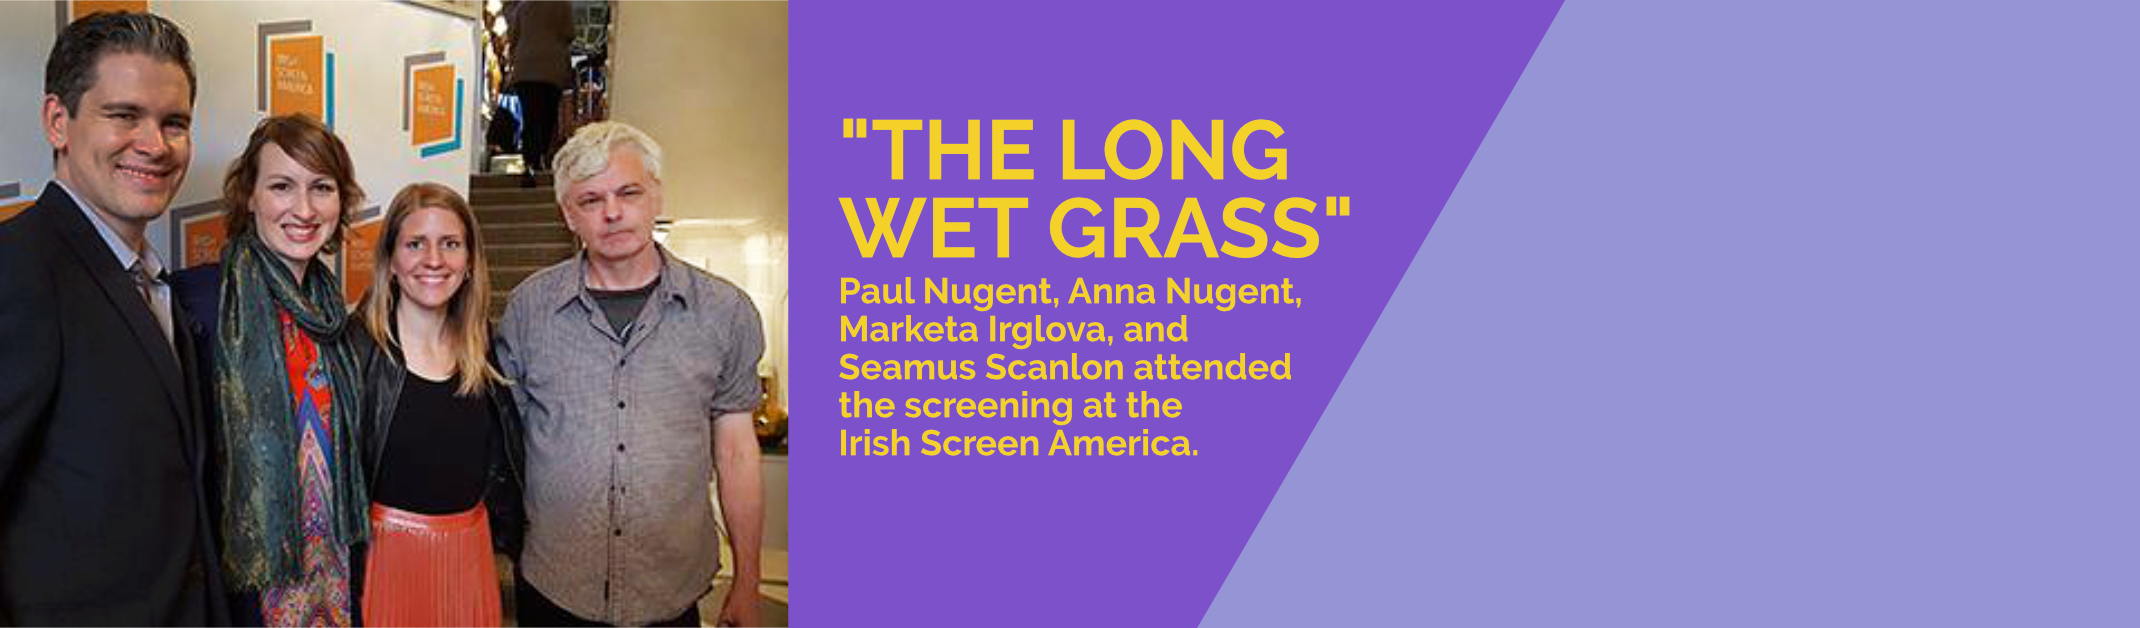 The Long Wet Grass screening